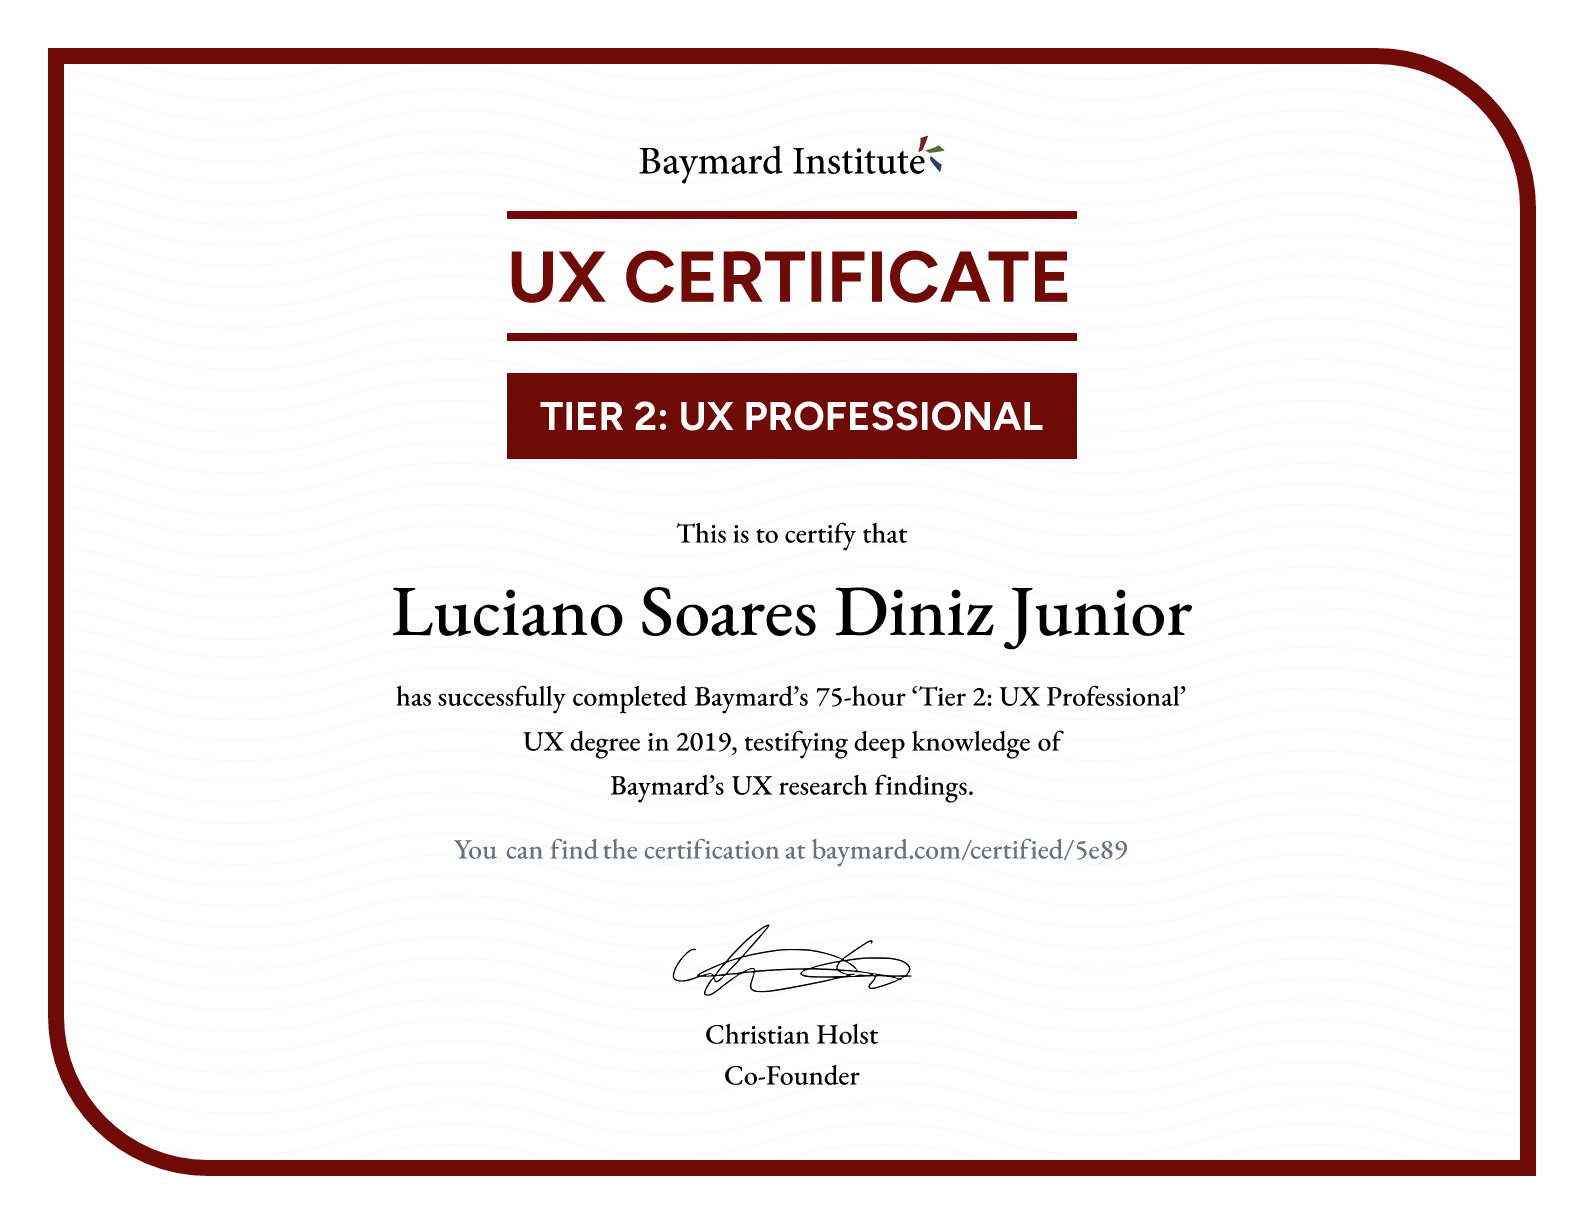 Luciano Soares Diniz Junior’s certificate